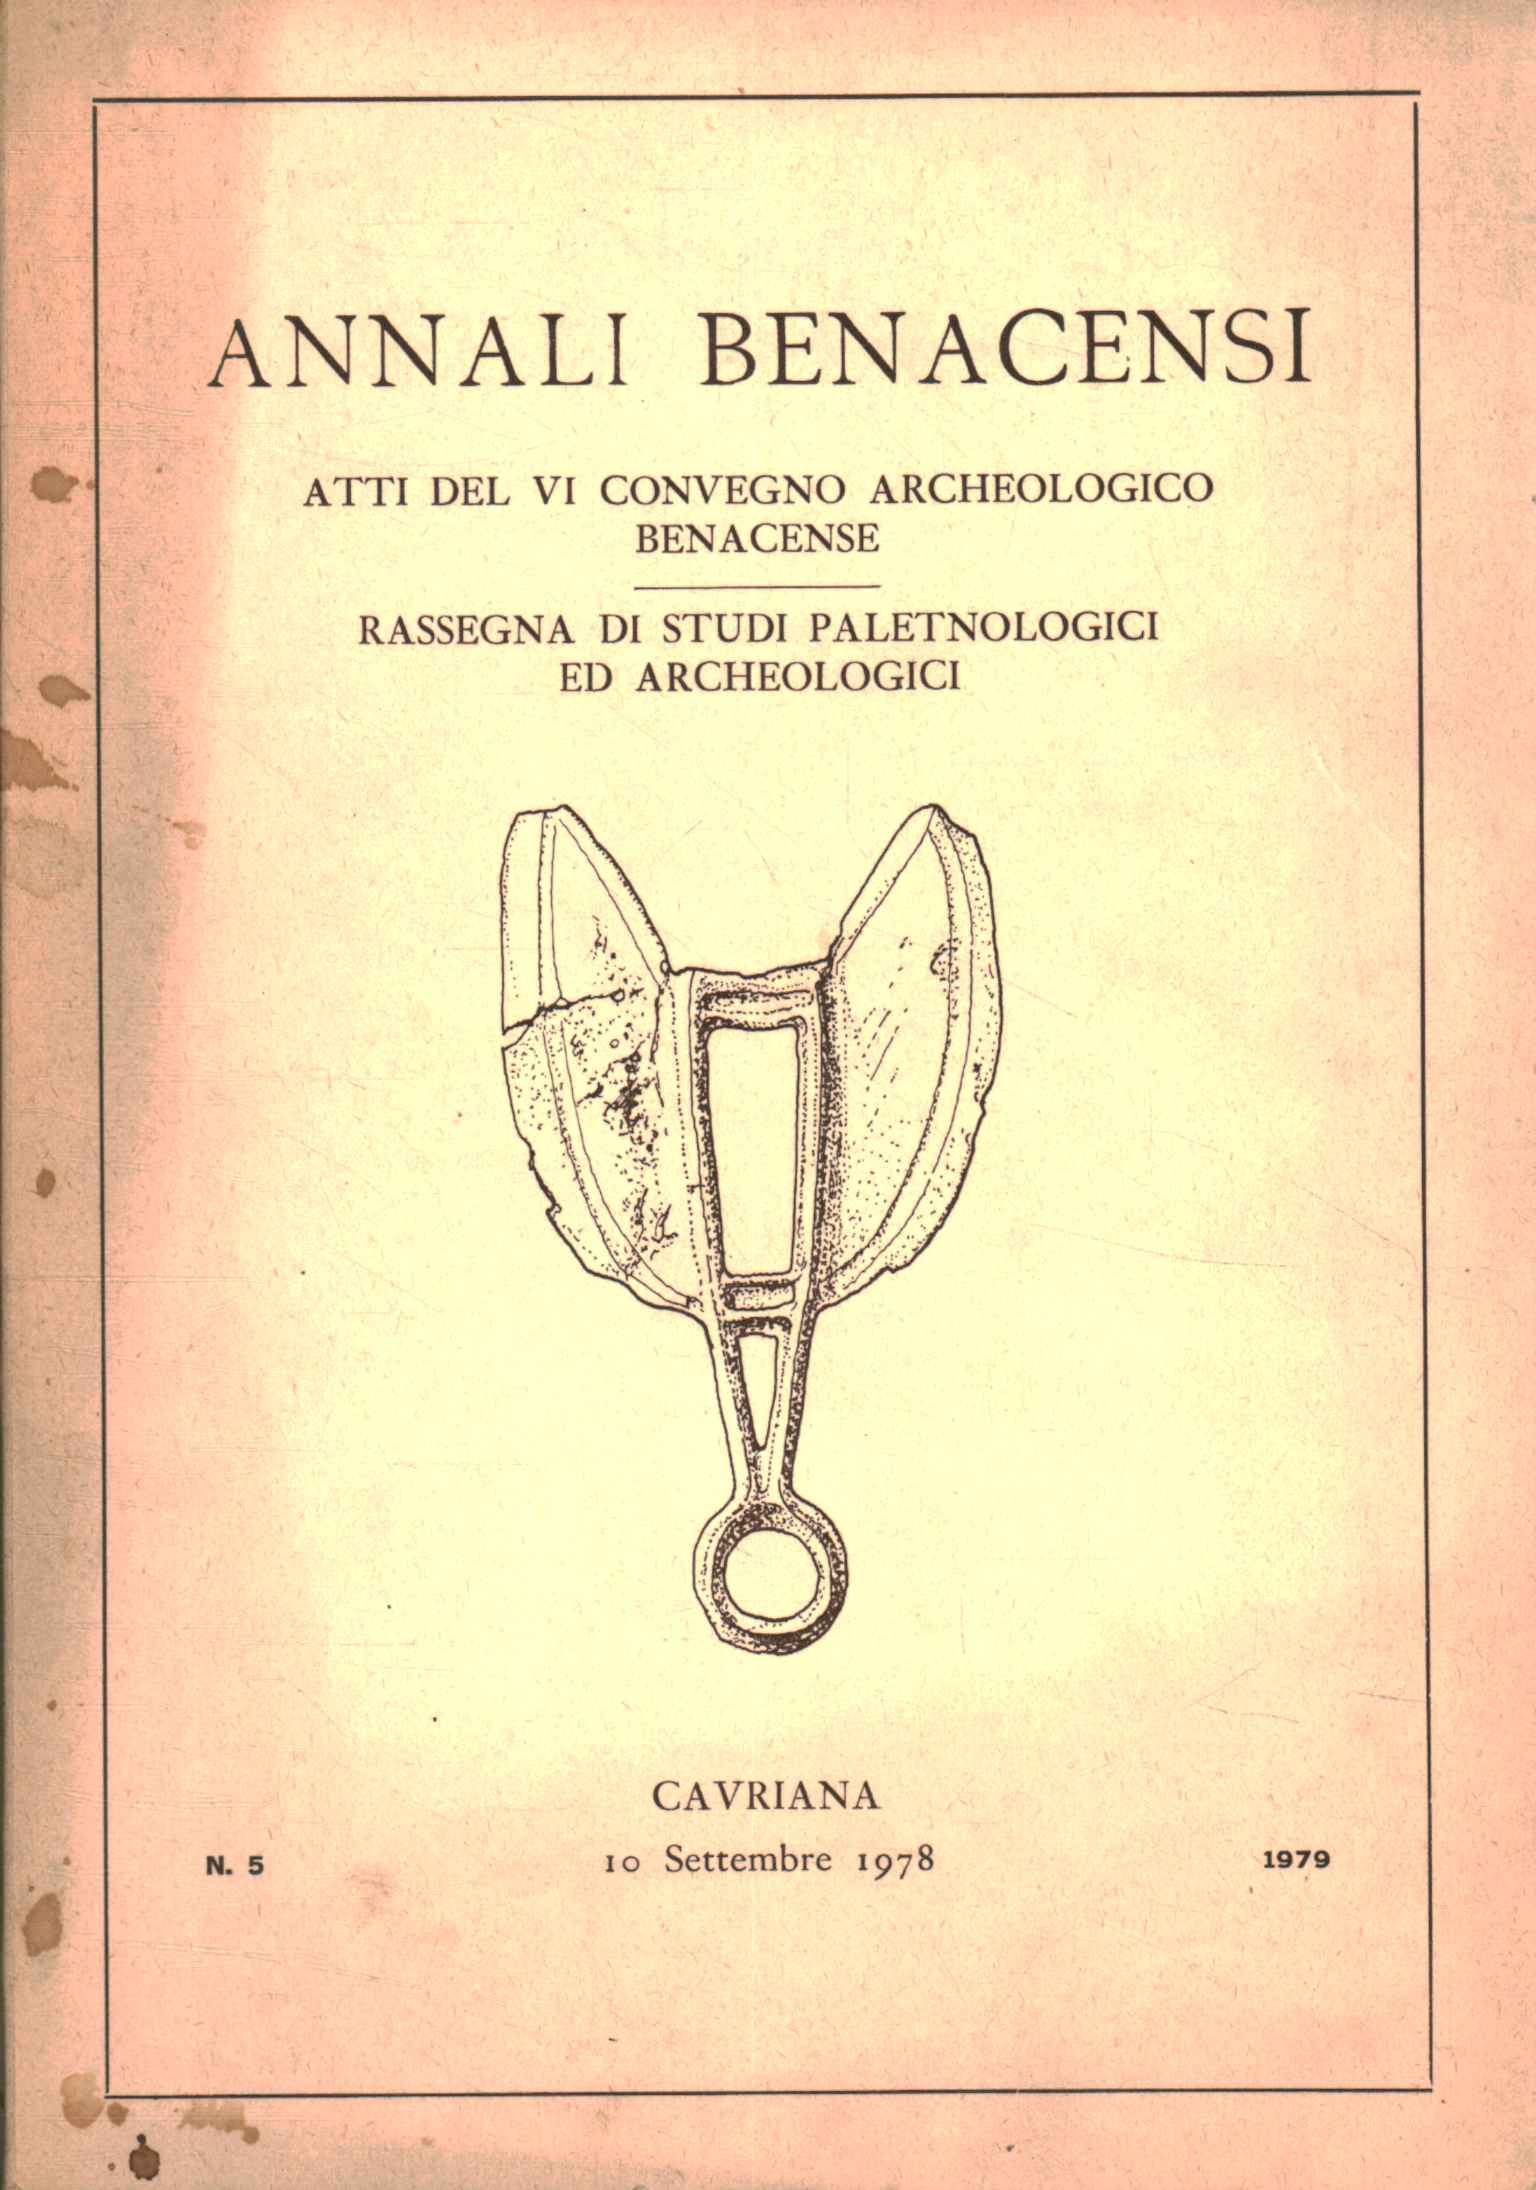 Annals of Benacensi n. 5